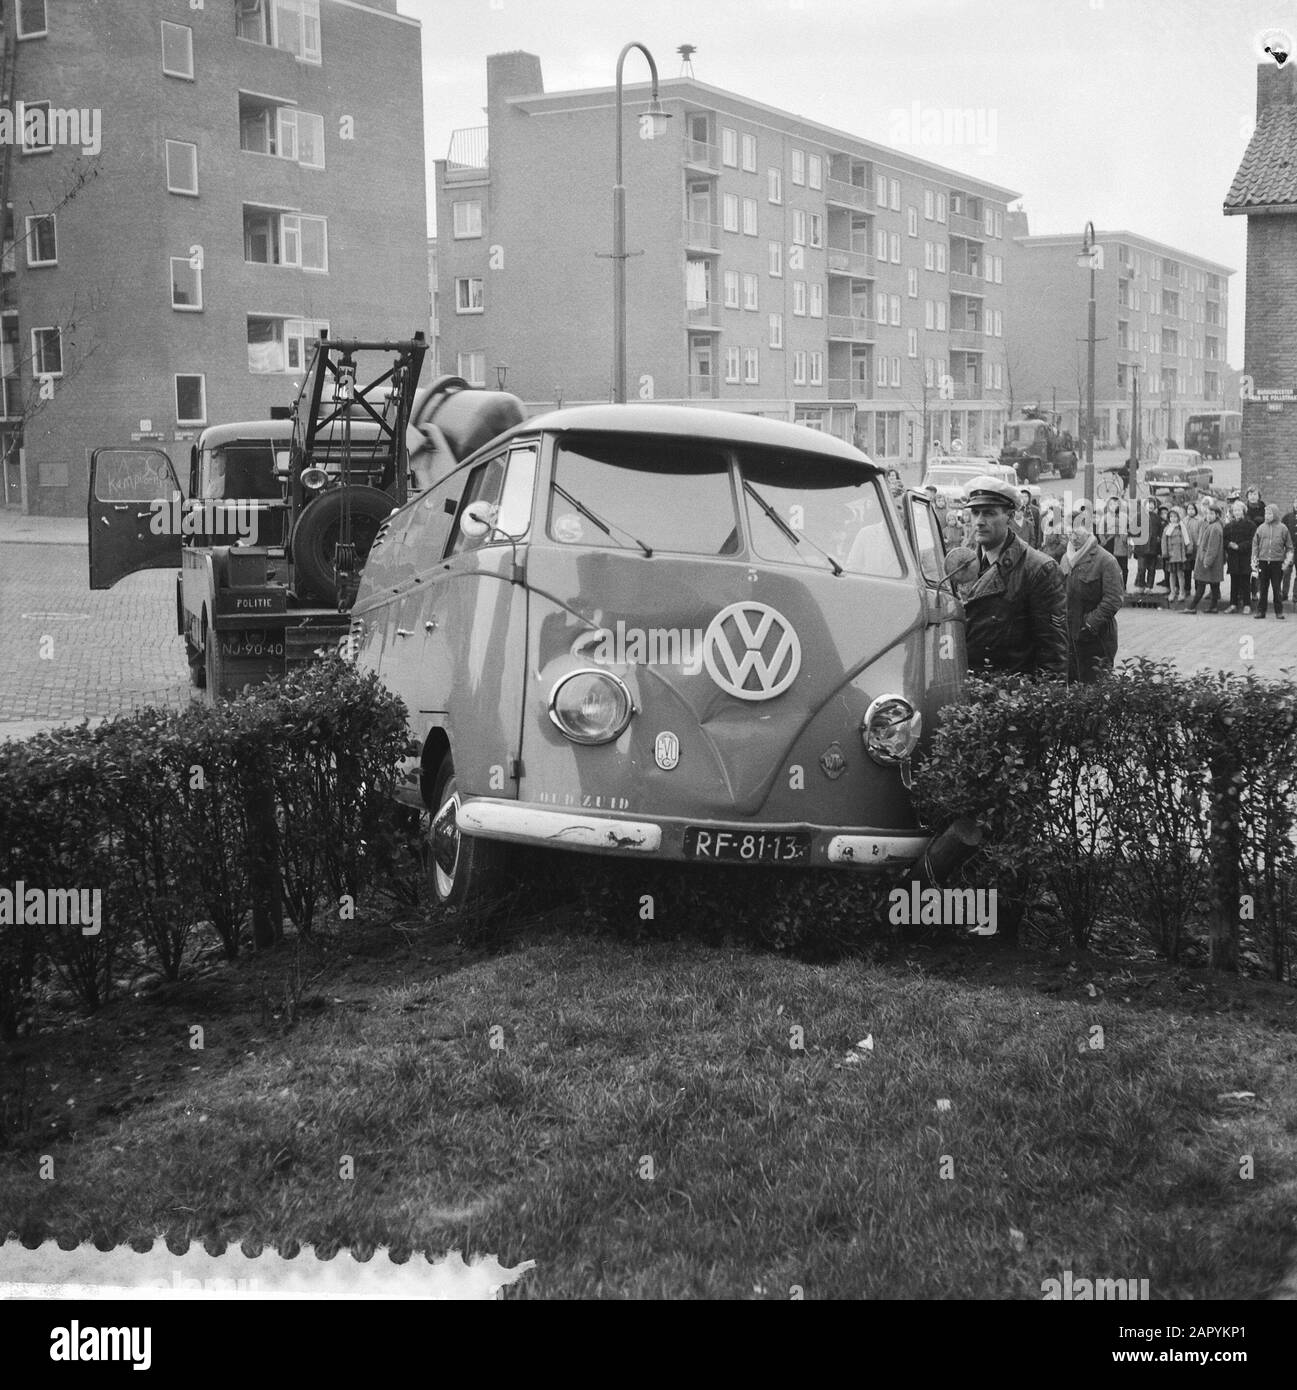 Volkswagen van in garden, by collision in New West Date: December 16, 1959 Keywords: Collisions, gardens Institution name: Volkswagen Stock Photo